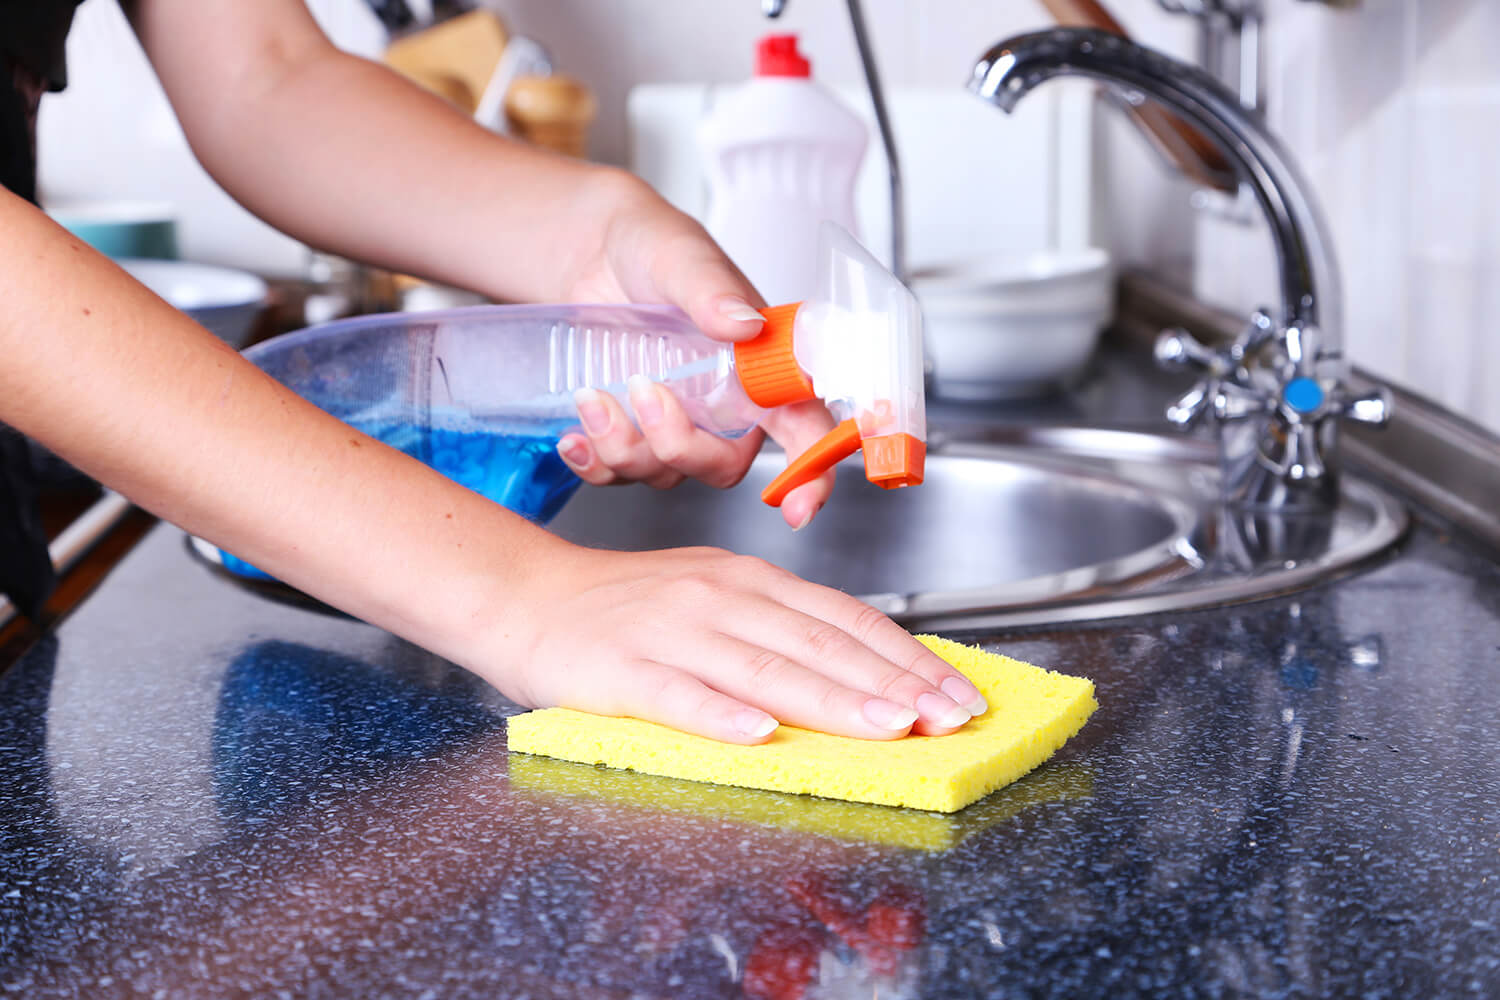 تنظيف سيراميك المطبخ بدون ماء